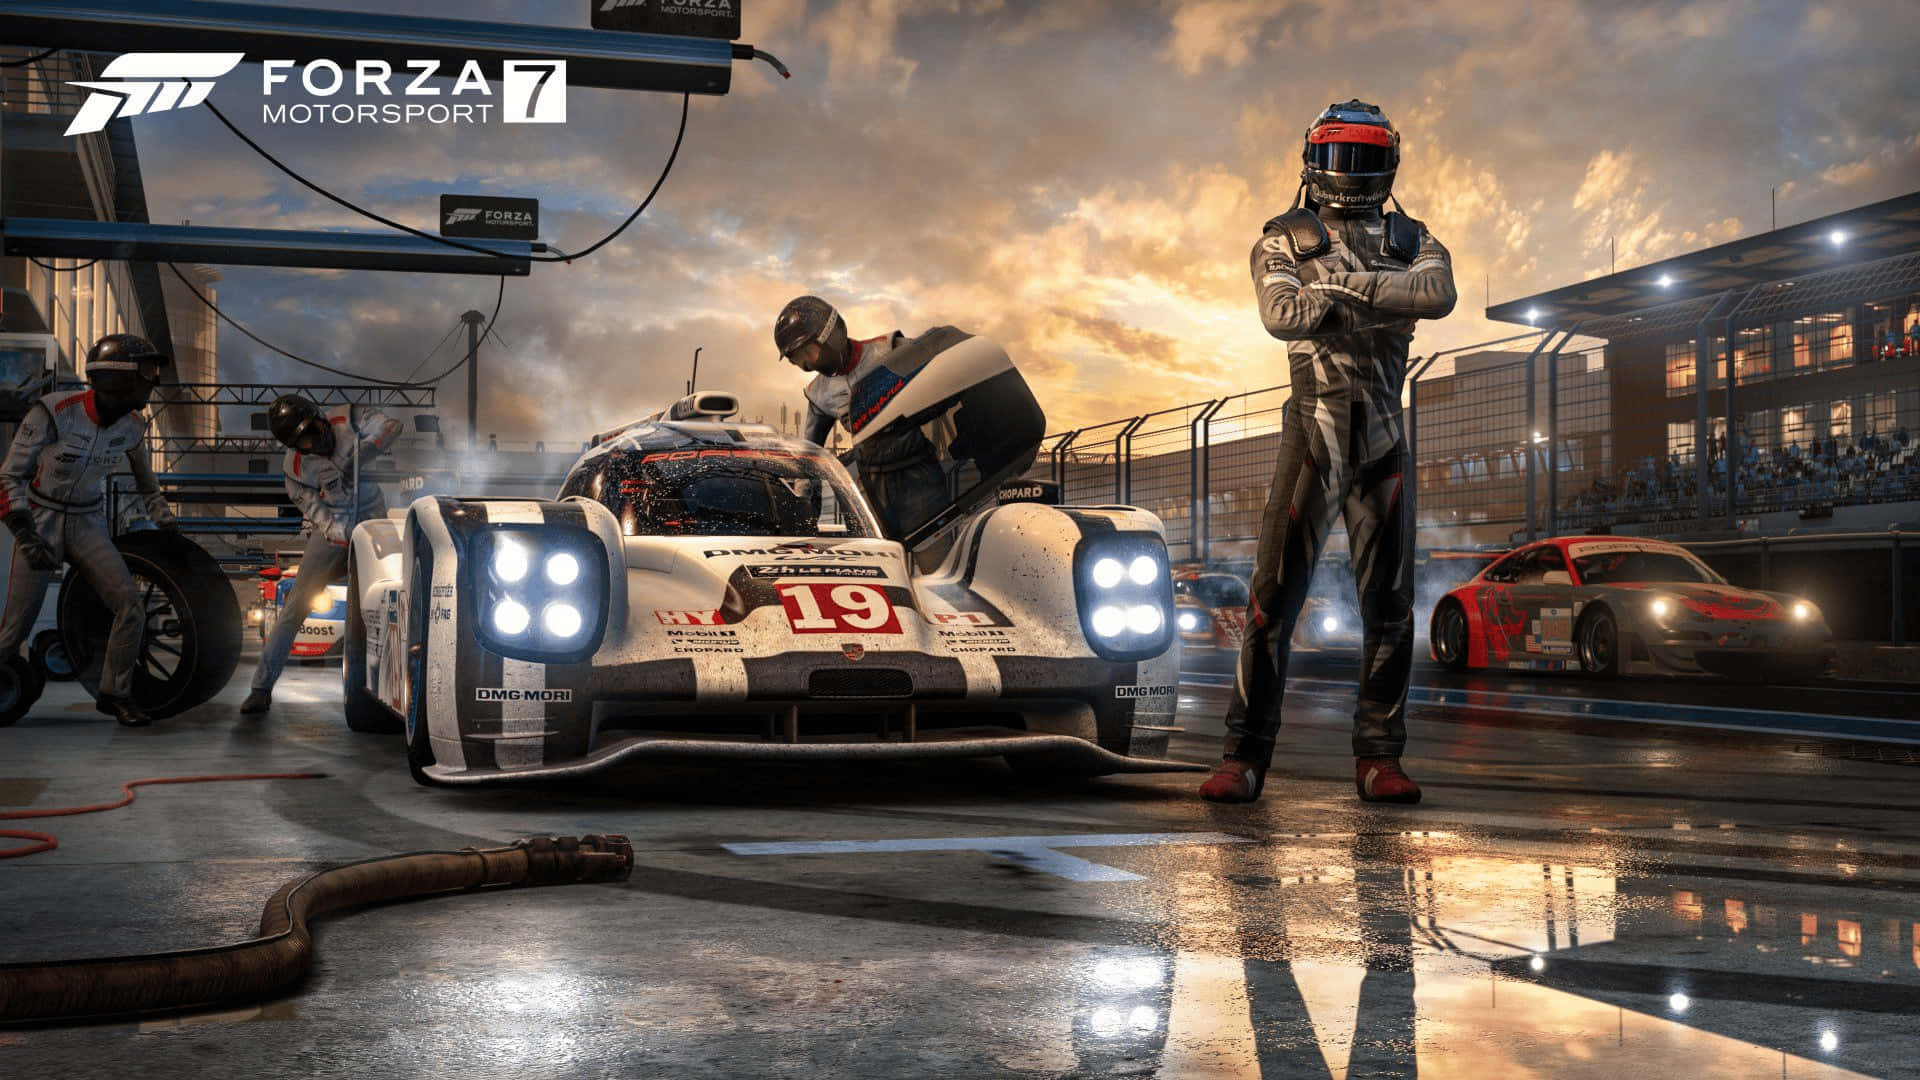 Goditil'emozionante Esperienza Di Forza Motorsport 7 In 1080p